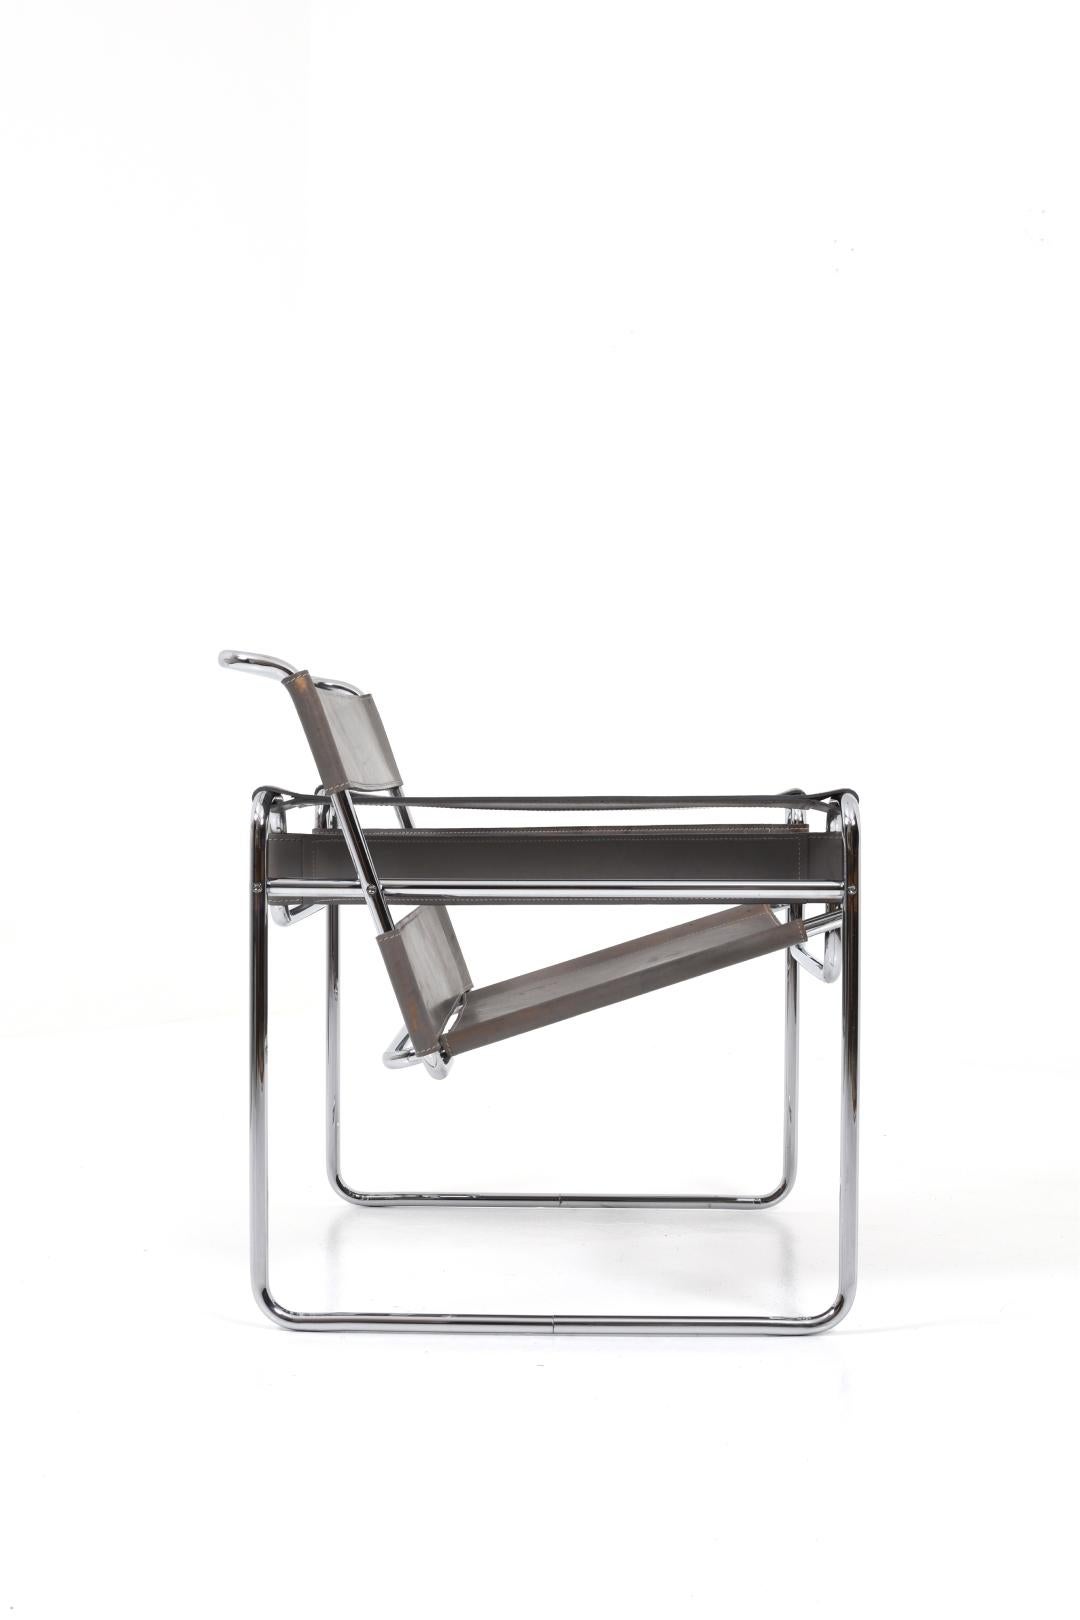 Der Wassily Lounge Chair ist eine Design-Ikone des berühmten Architekten Marcel Breuer, die er 1925 entworfen hat.

Das Gestell des Stuhls besteht aus gebogenen Stahlrohren und verleiht ihm eine klare und luftige Ästhetik. Diese zeitlose Designwahl